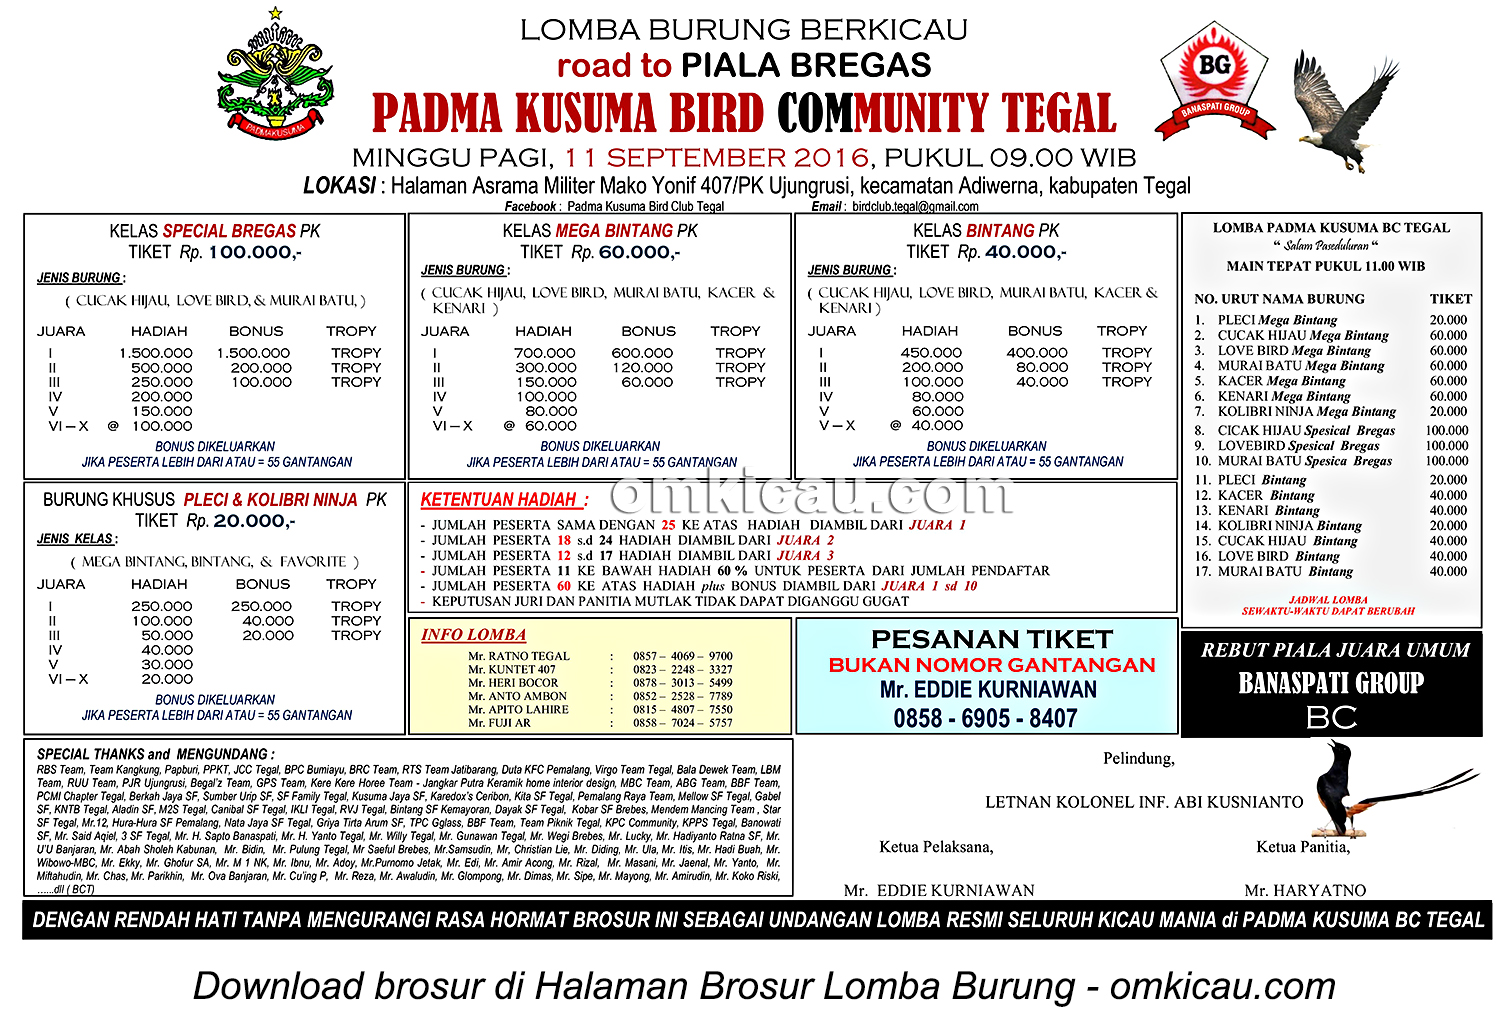 Brosur Lomba Burung Berkicau Road to Piala Bregas-Padma Kusuma BC, Tegal, 11 September 2016